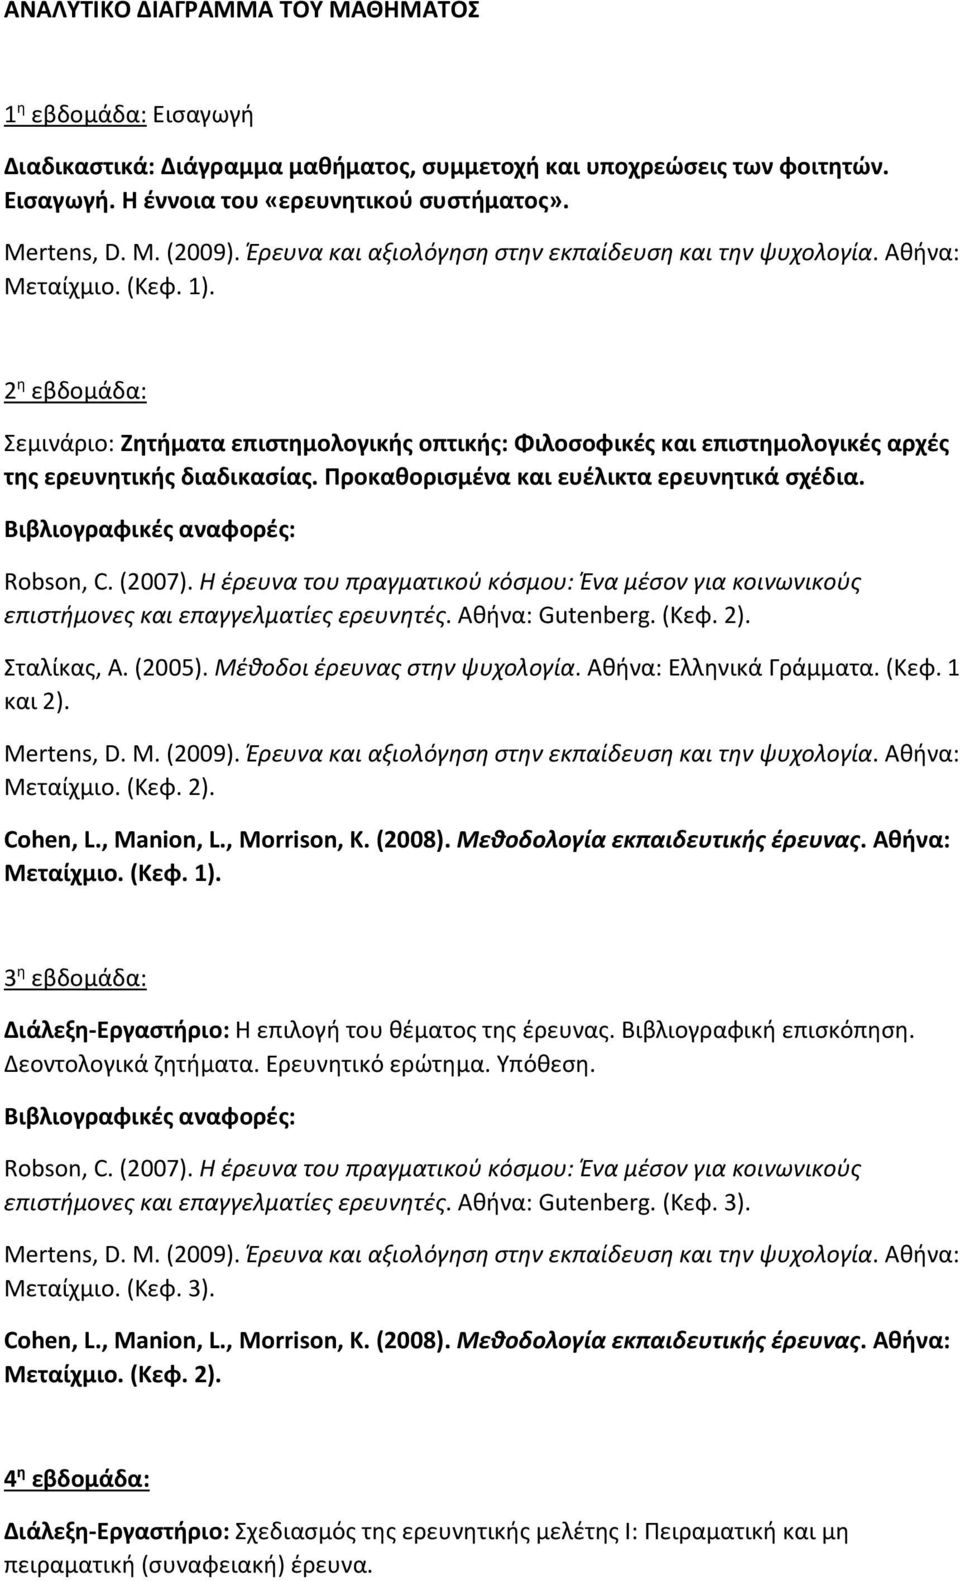 επιστήμονες και επαγγελματίες ερευνητές. Αθήνα: Gutenberg. (Κεφ. 2). Σταλίκας, Α. (2005). Μέθοδοι έρευνας στην ψυχολογία. Αθήνα: Ελληνικά Γράμματα. (Κεφ. 1 και 2). Μεταίχμιο. (Κεφ. 2). Μεταίχμιο. (Κεφ. 1).